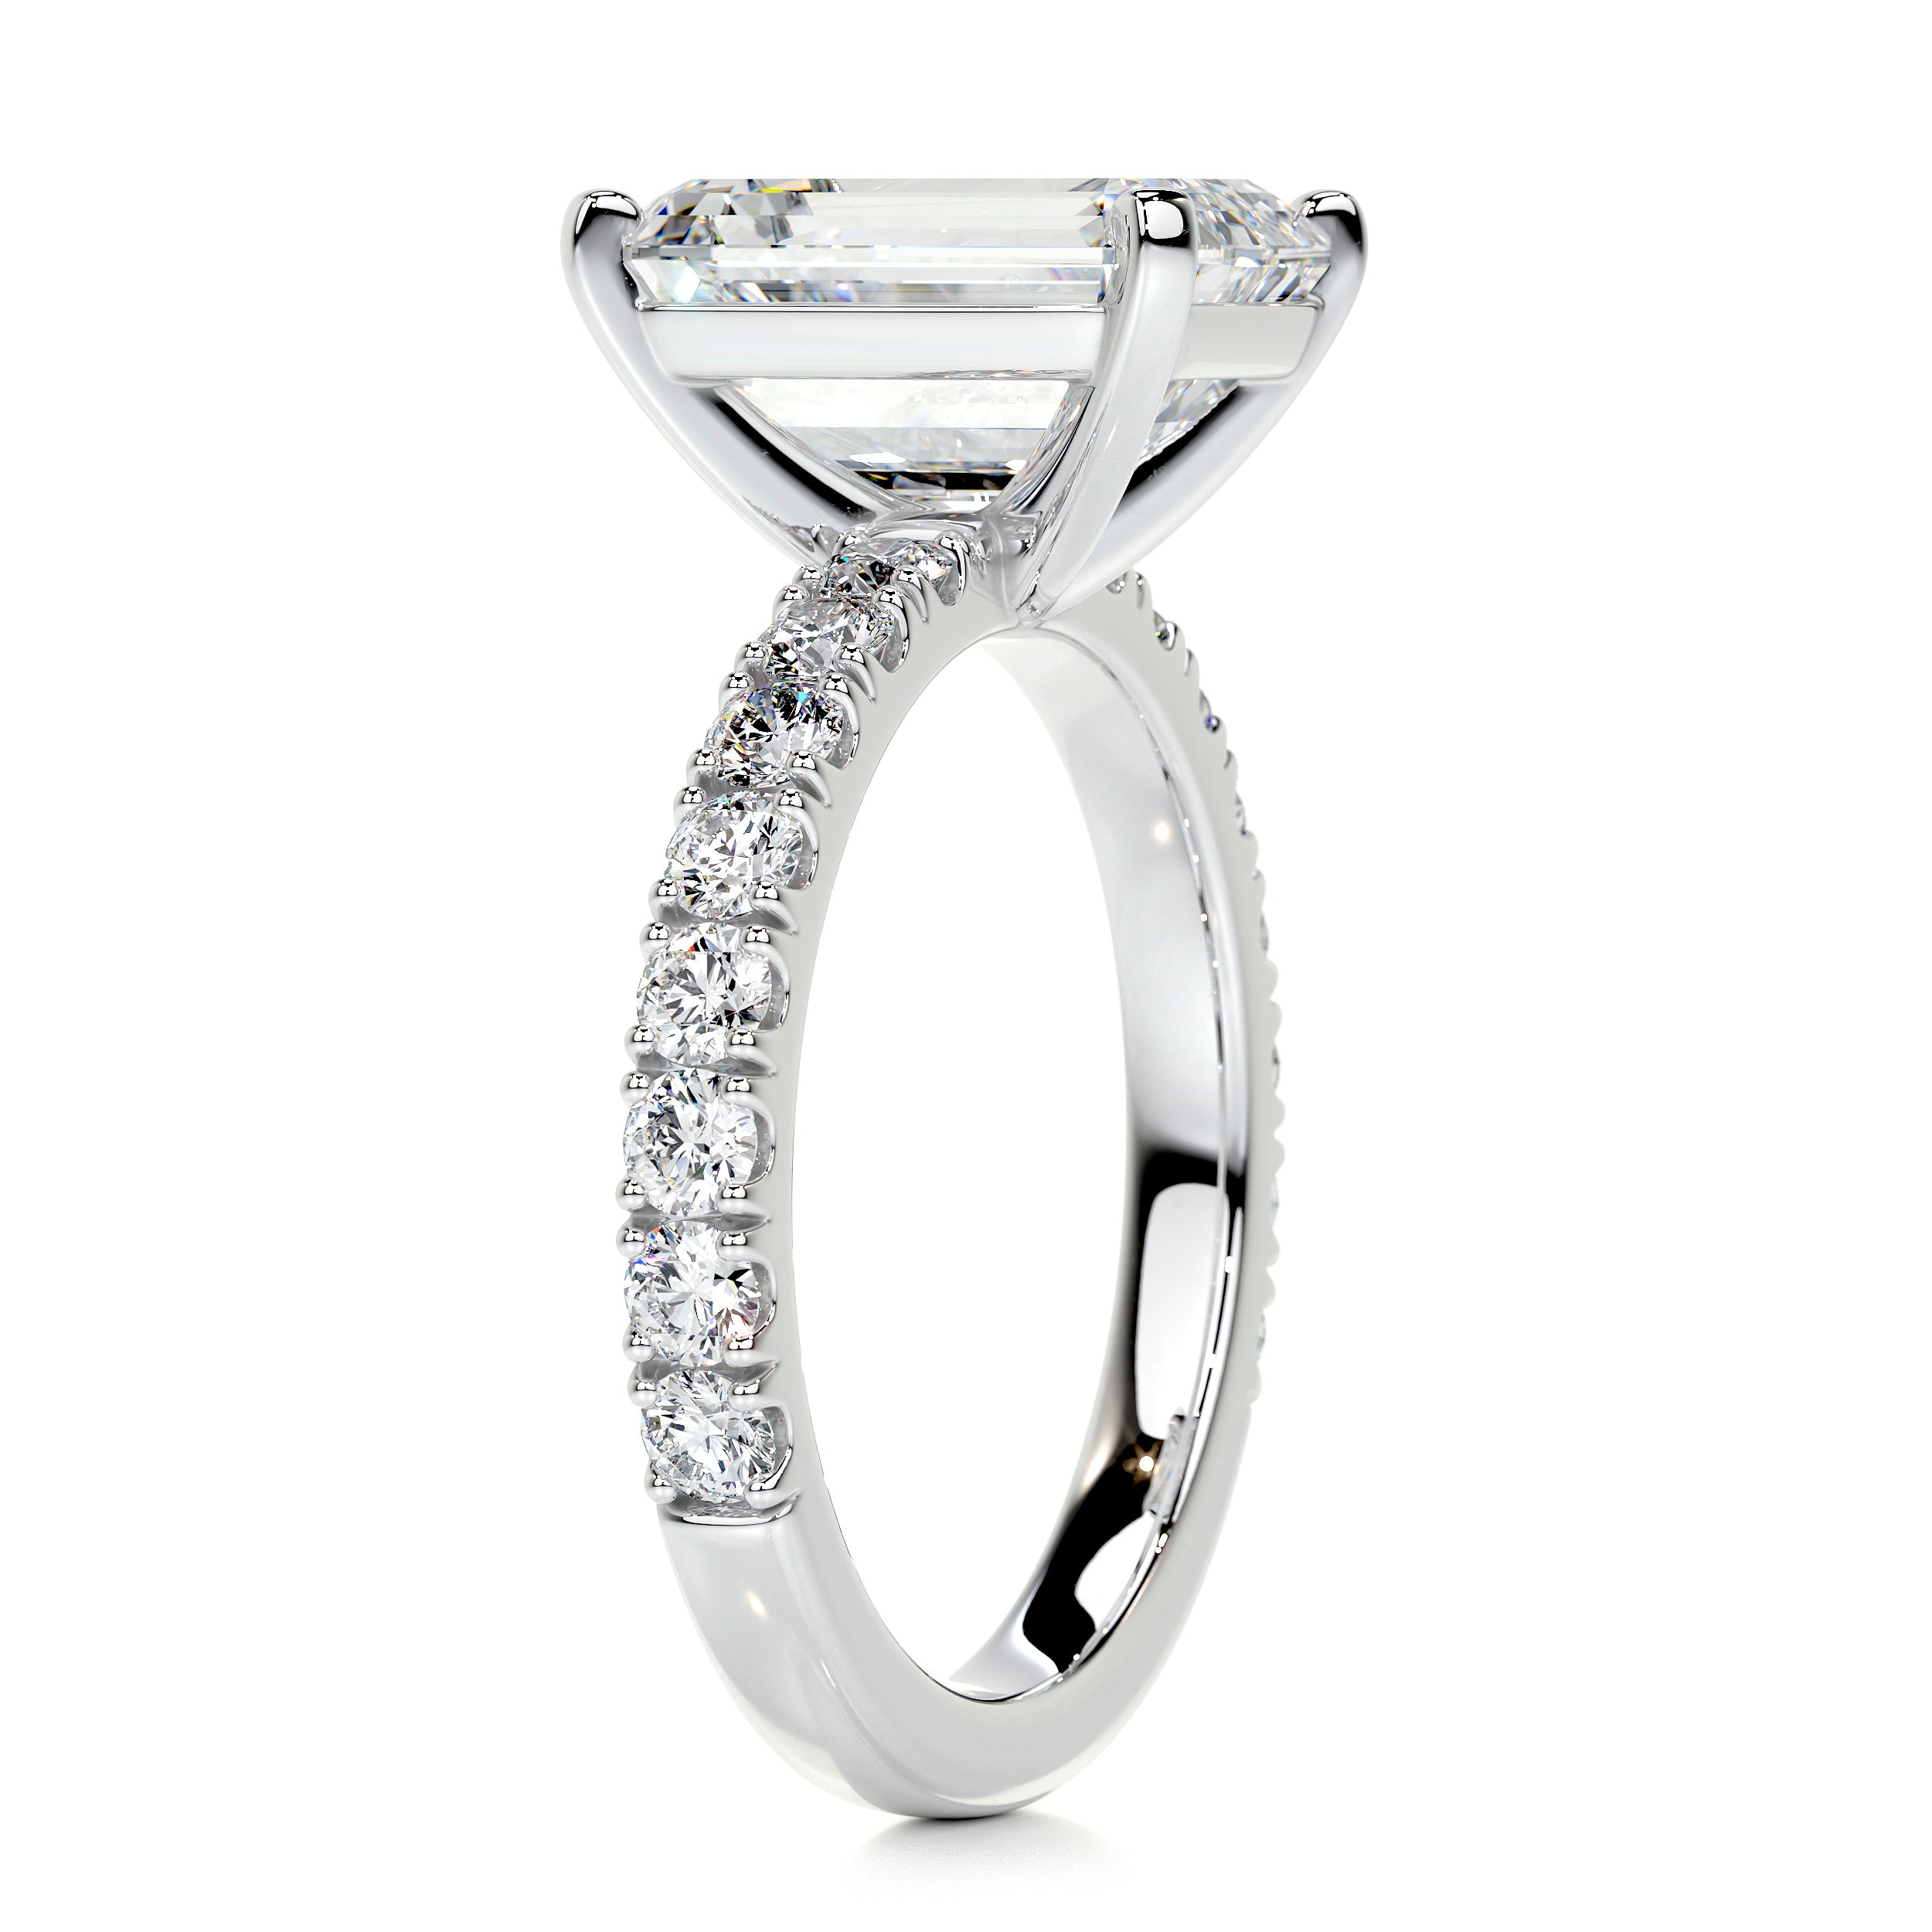 Royal Diamond Engagement Ring   (3.5 Carat) -14K White Gold